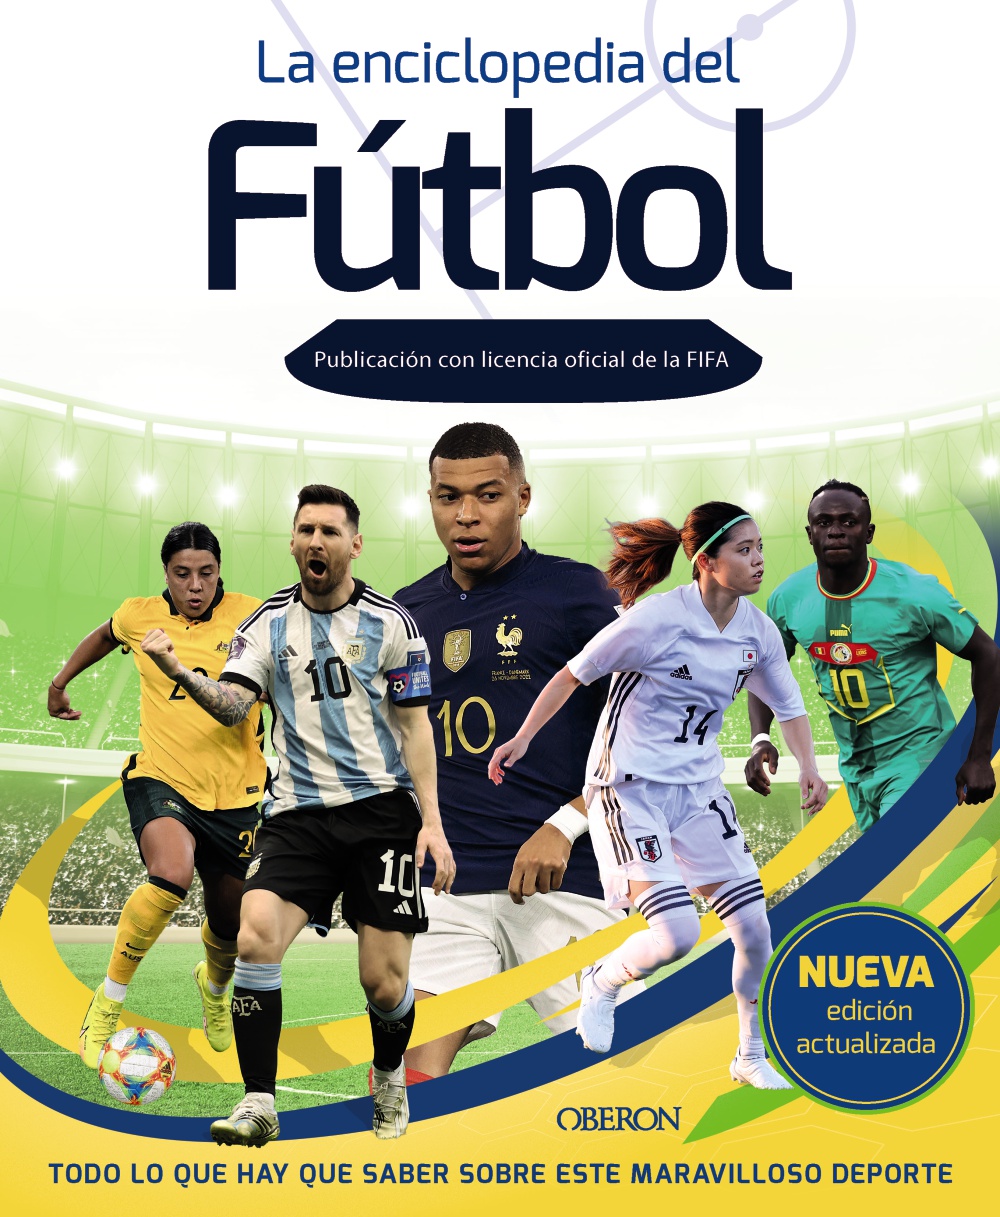 La enciclopedia del Fútbol